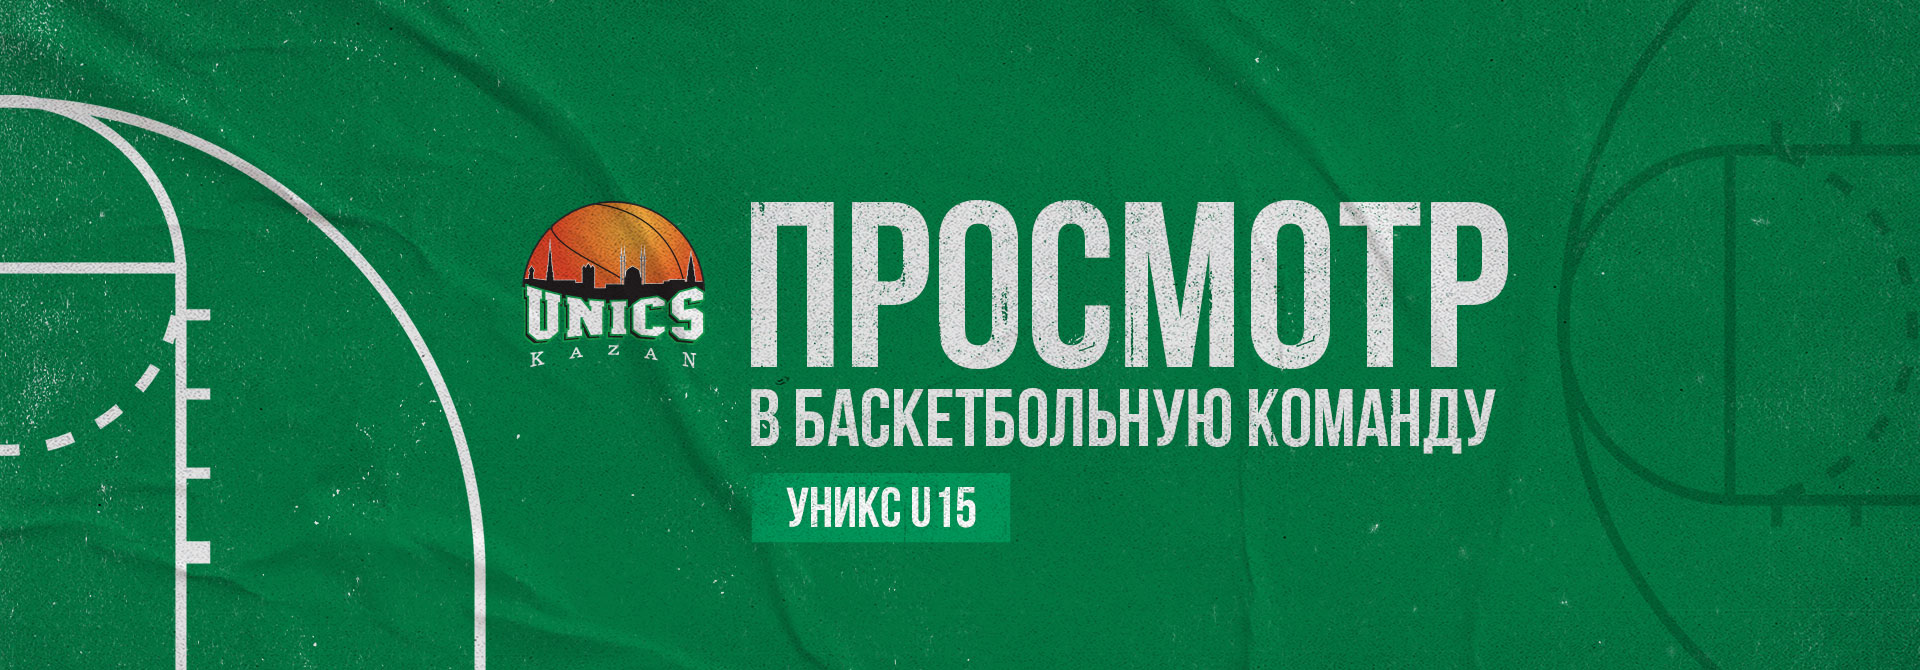 Просмотр в баскетбольную команду УНИКС U15 